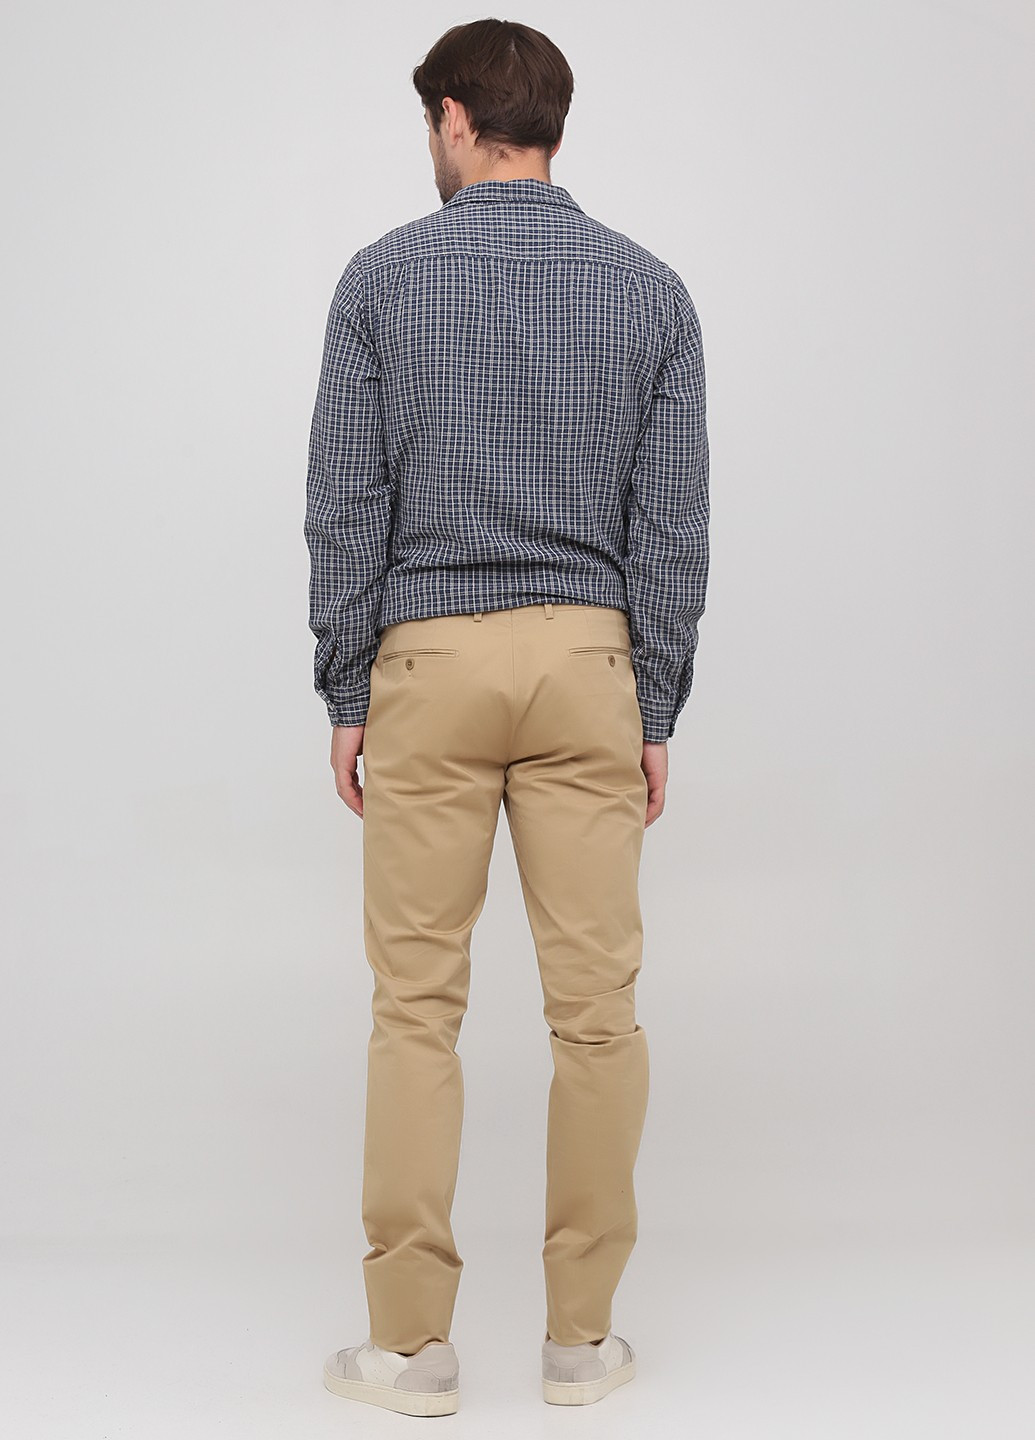 Бежевые кэжуал демисезонные чиносы брюки Ralph Lauren